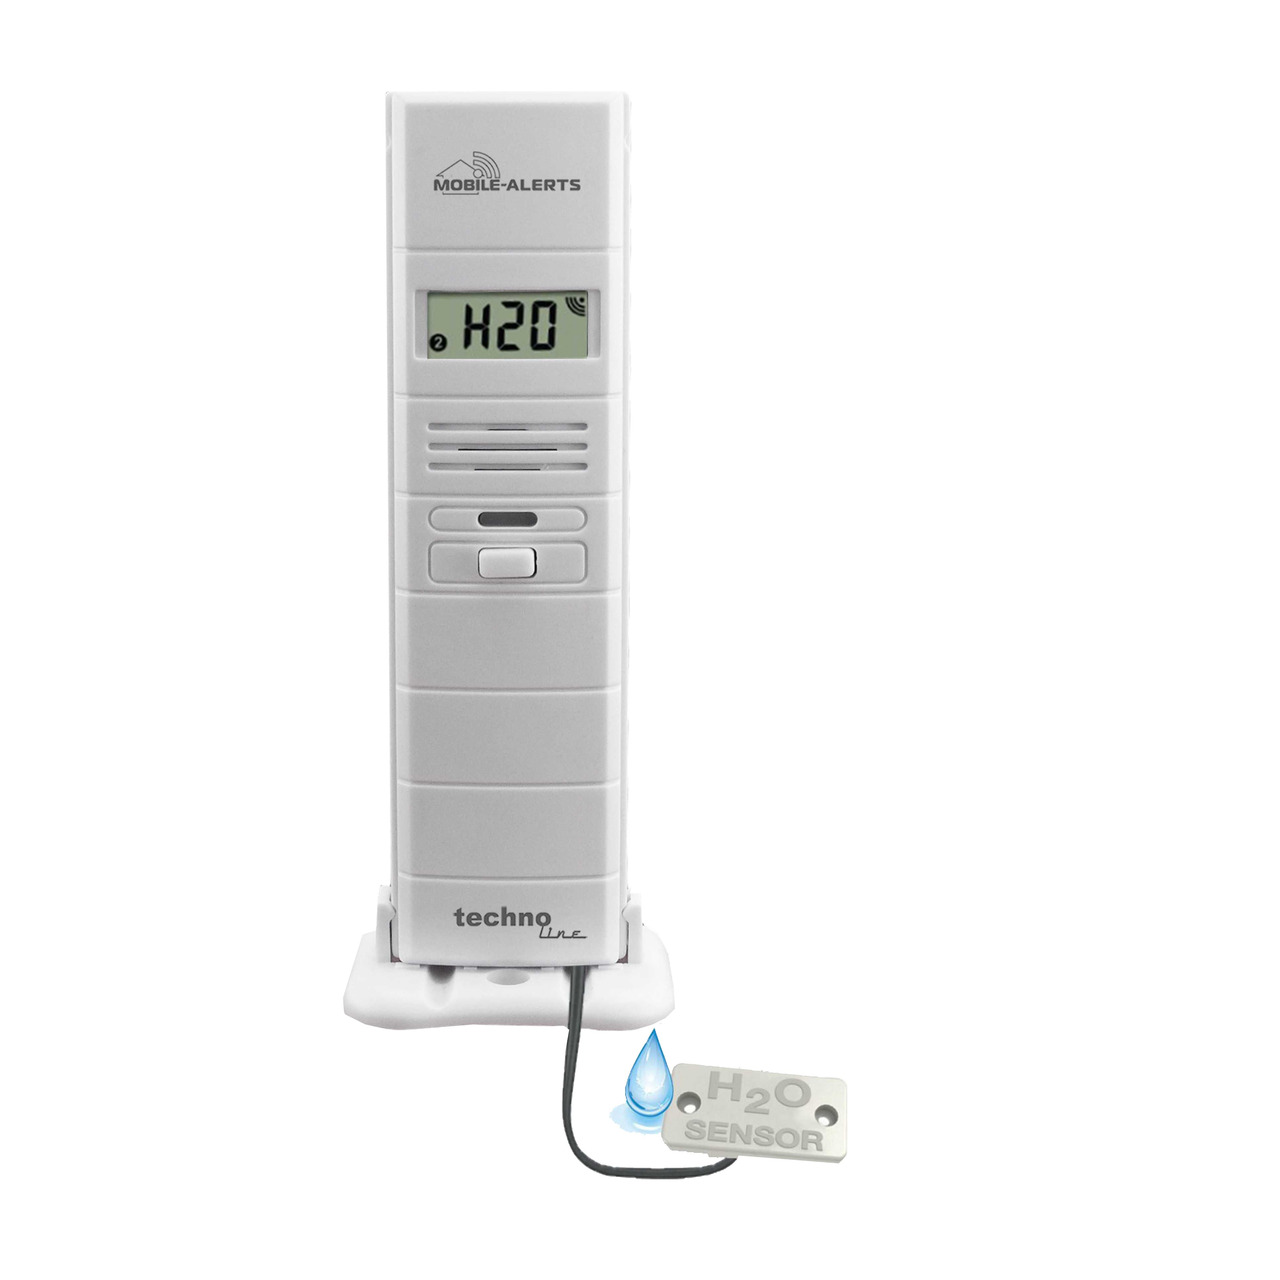 Mobile Alerts Thermo-Hygrosensor MA10350 mit zustzlichem Wasserdetektor unter Klima - Wetter - Umwelt